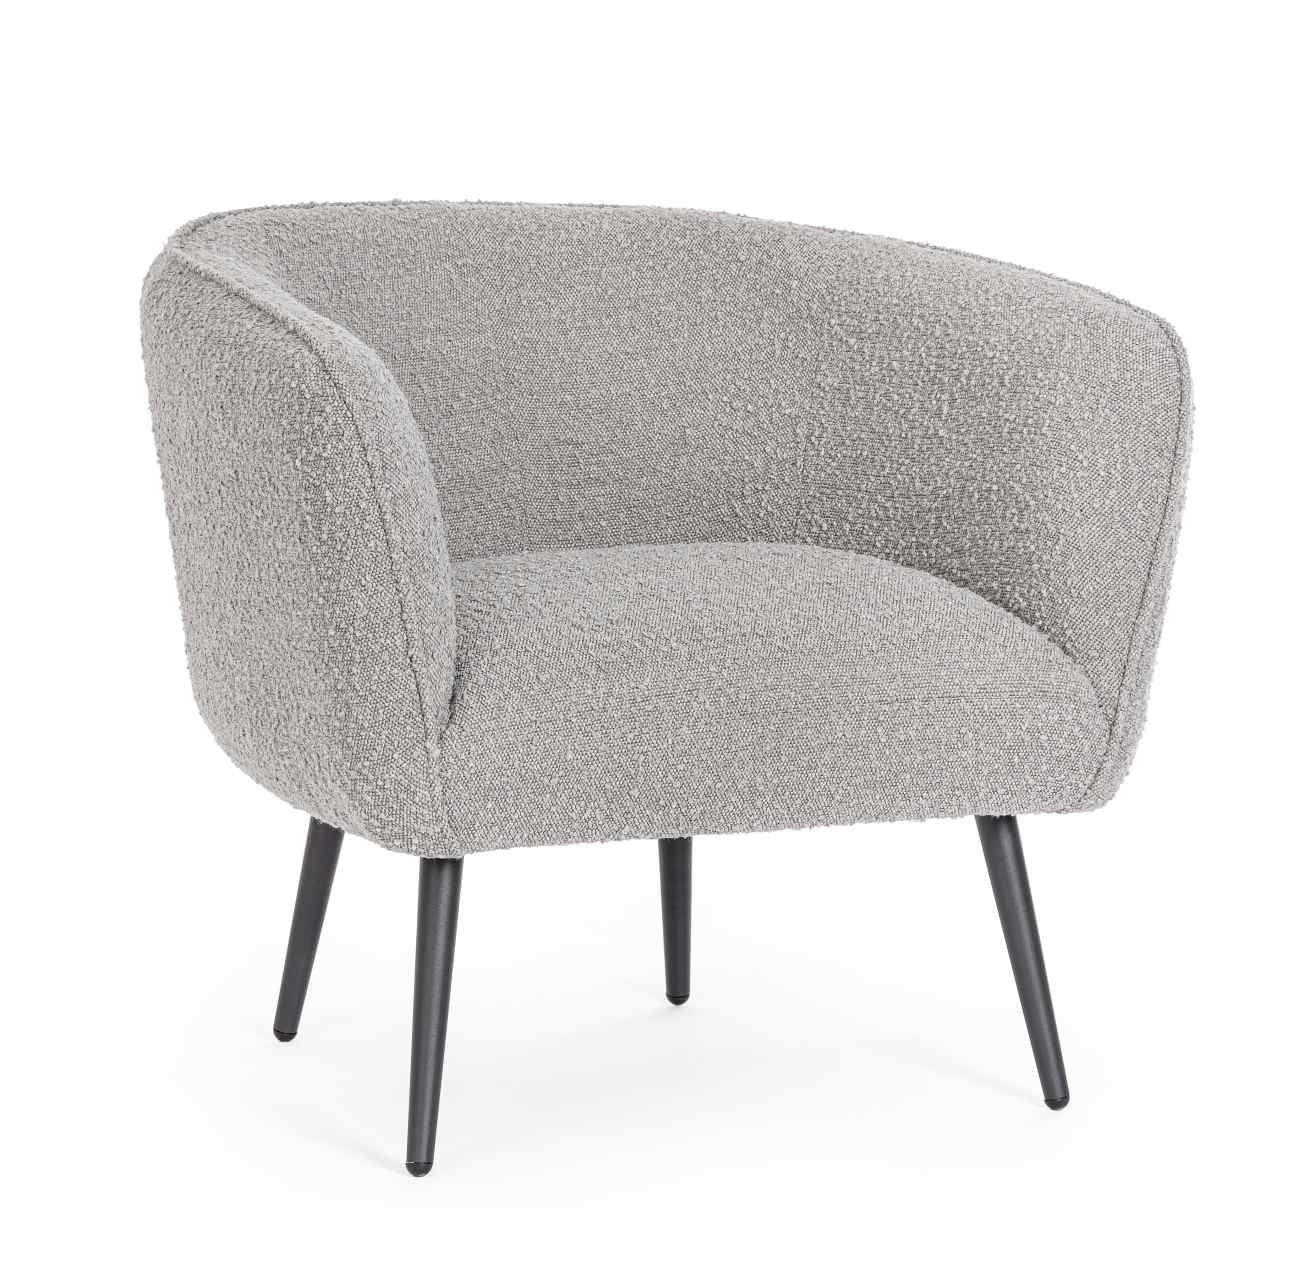 Der Sessel Avril überzeugt mit seinem modernen Stil. Gefertigt wurde er aus Bouclè-Stoff, welcher einen grauen Farbton besitzt. Das Gestell ist aus Metall und hat eine schwarze Farbe. Der Sessel verfügt über eine Armlehne.